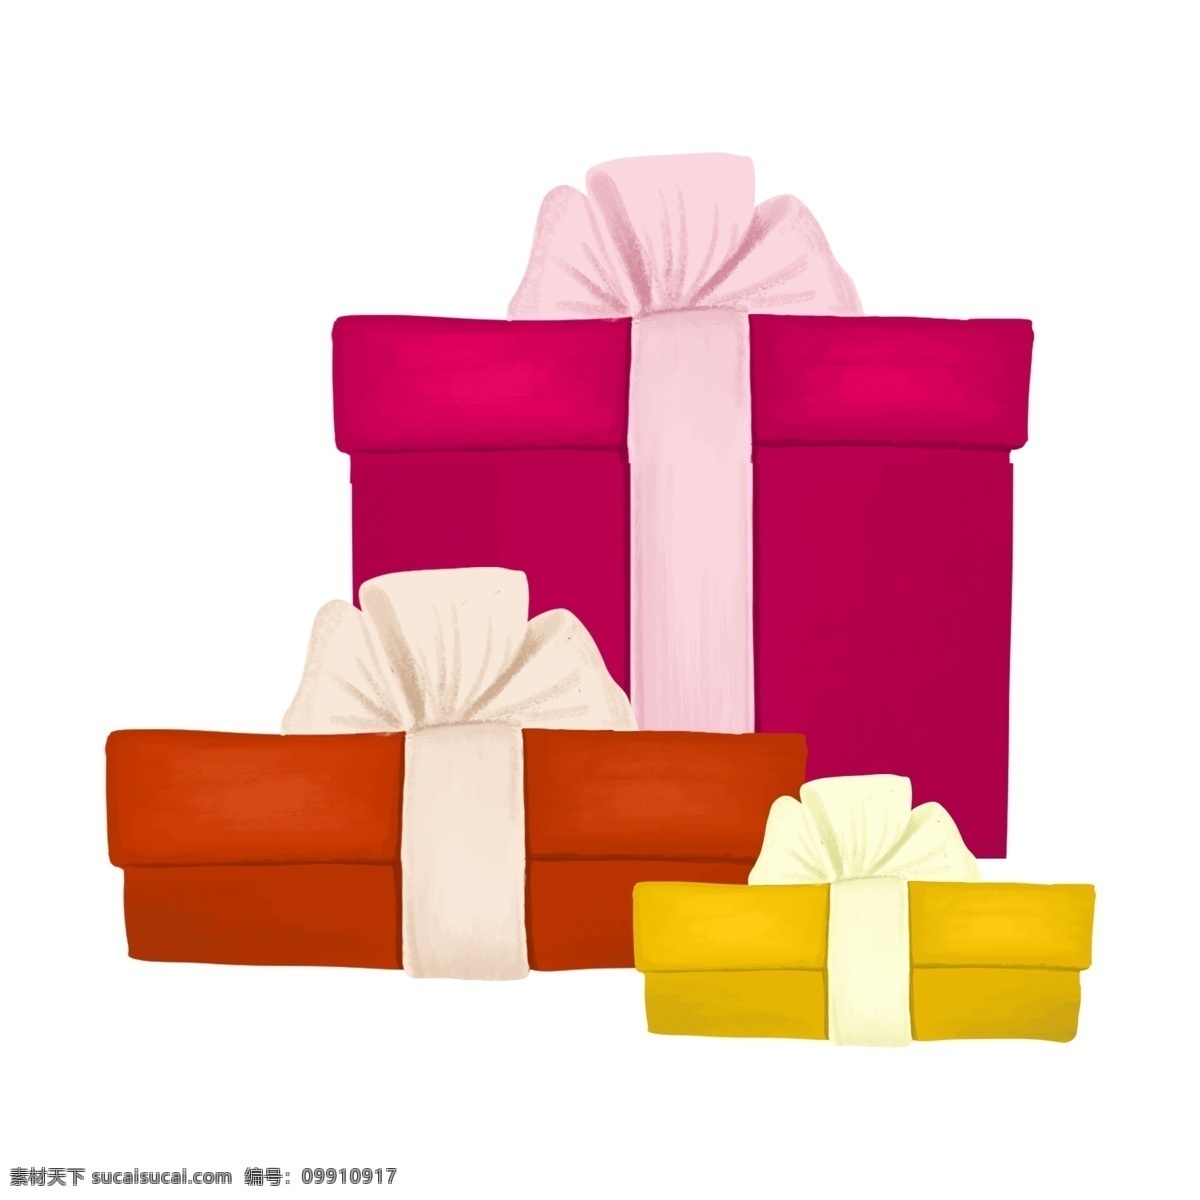 礼物 感恩节 矢量图 礼物盒 礼品盒 包装盒 盒子 粉色 红色 包装袋 纸盒 长方形 卡通 手绘礼物盒